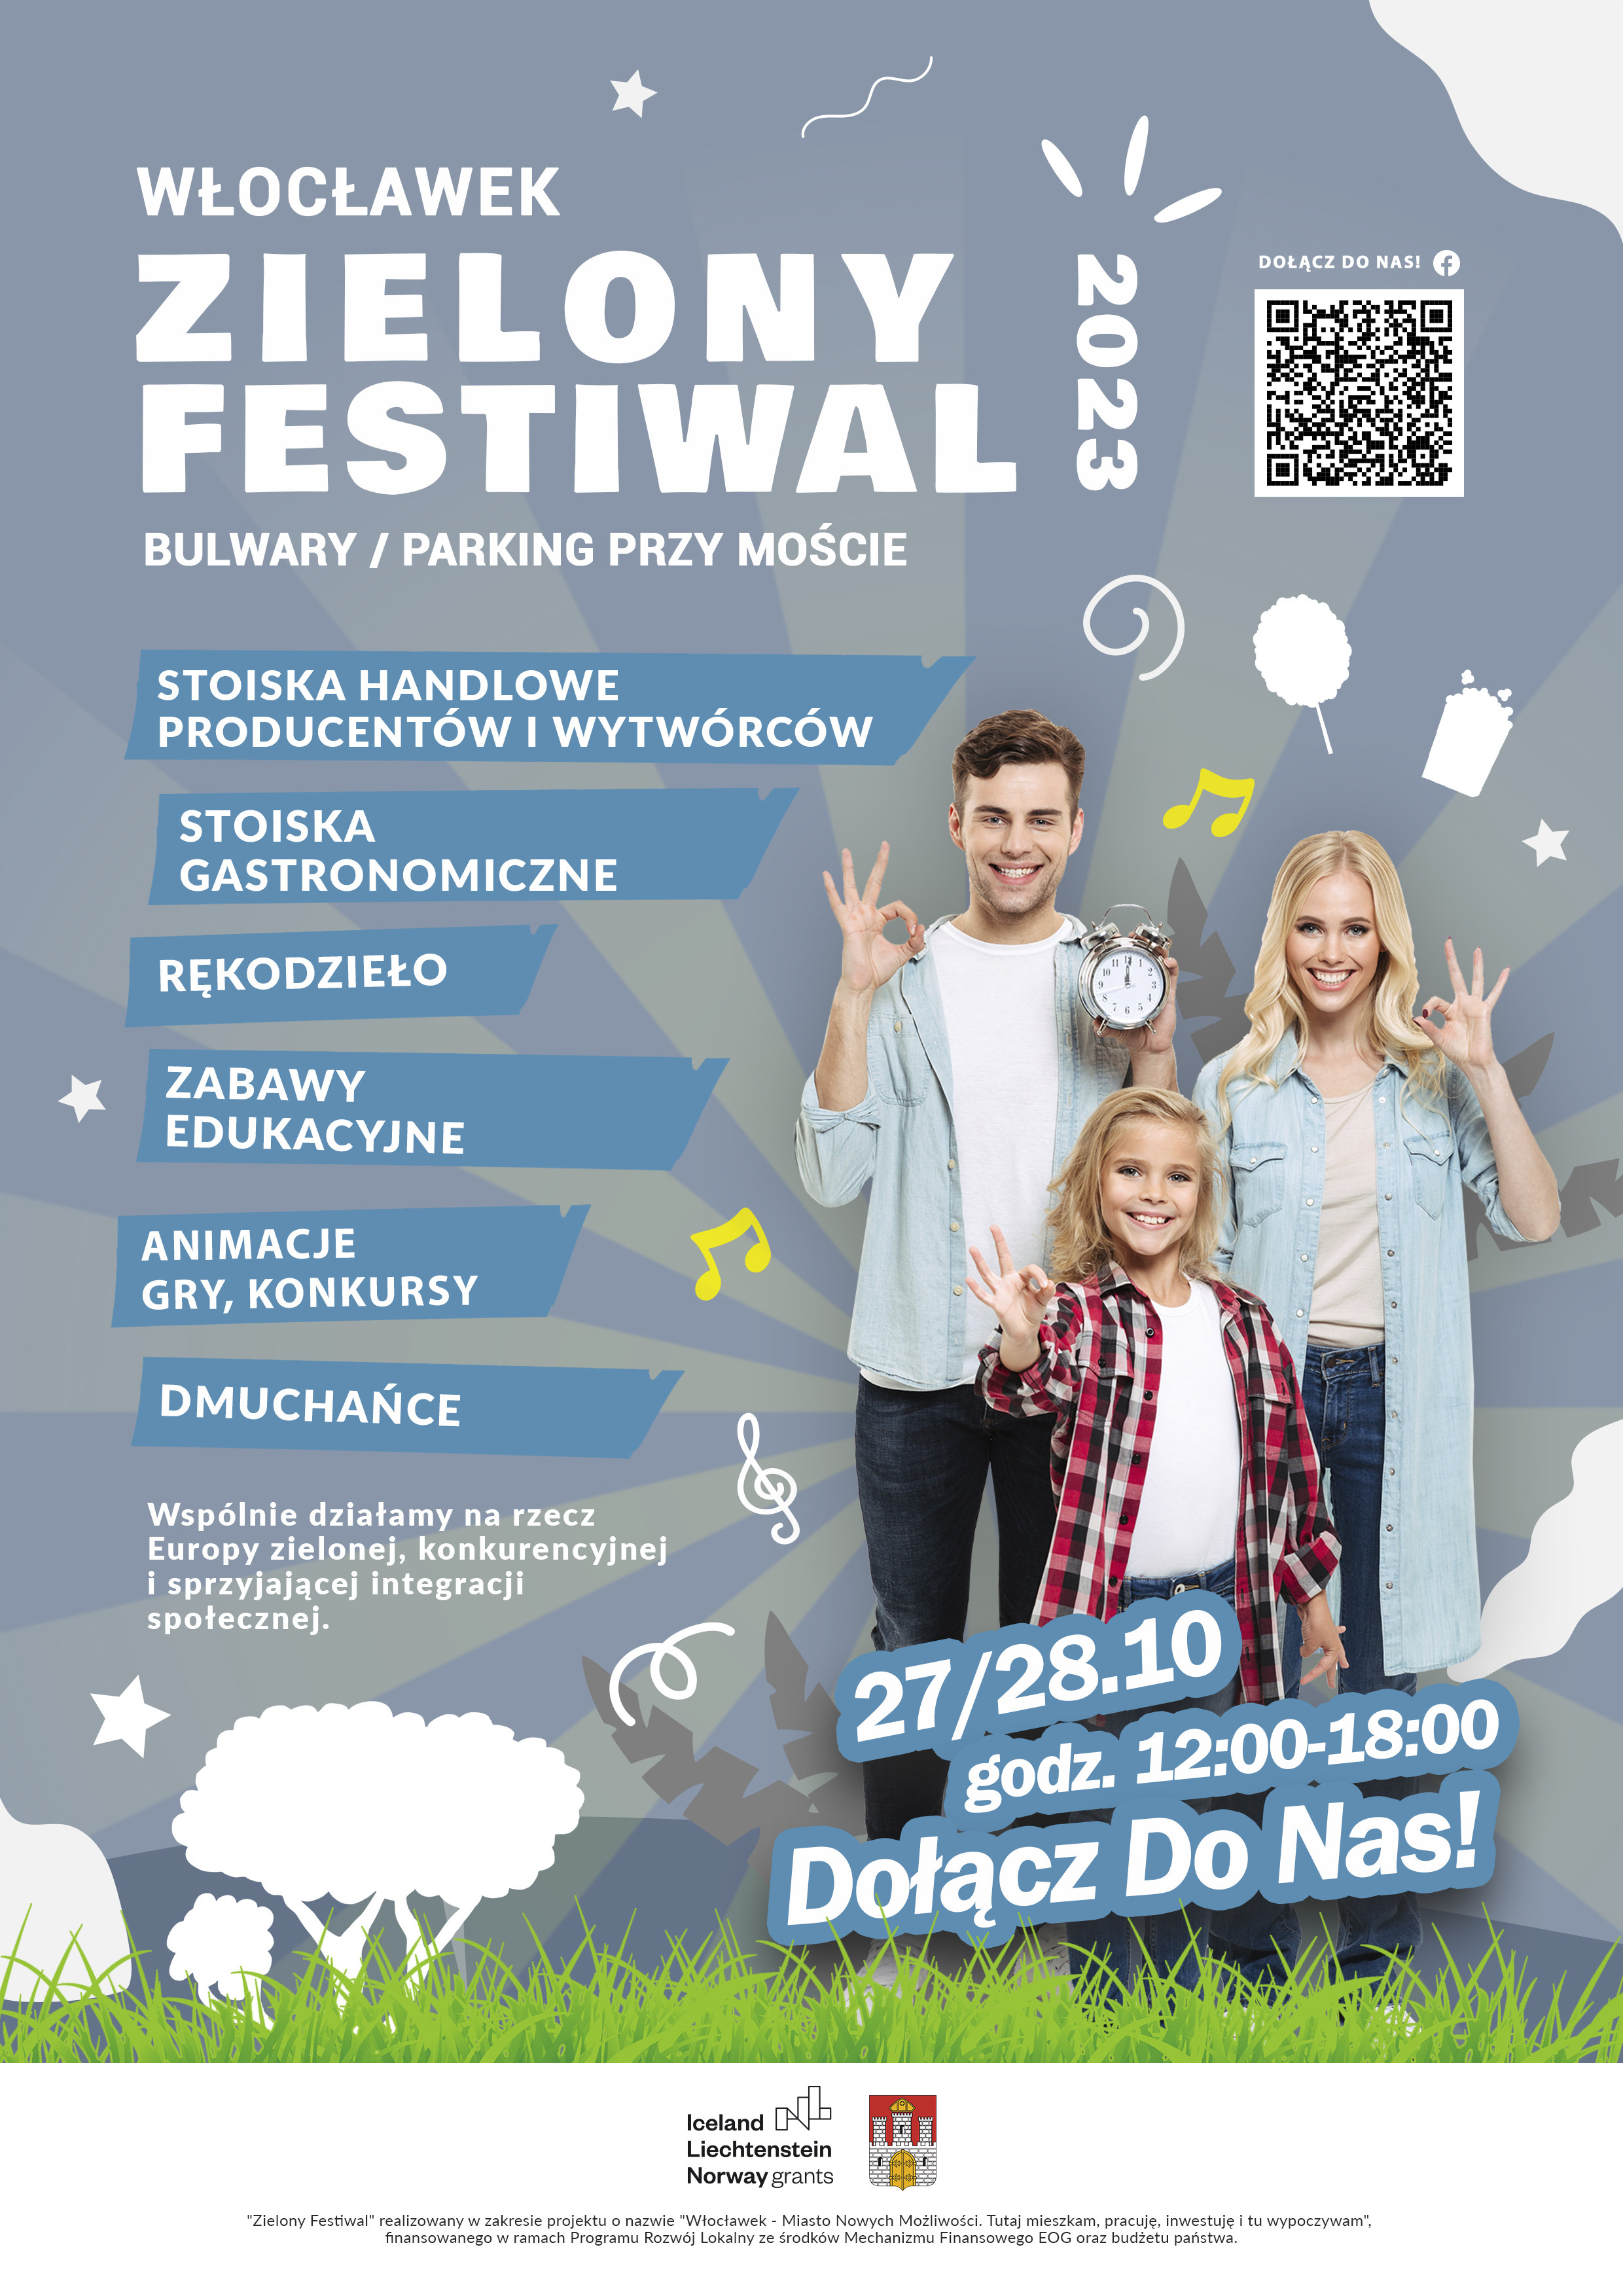 Zielony festiwal ponownie we Włocławku